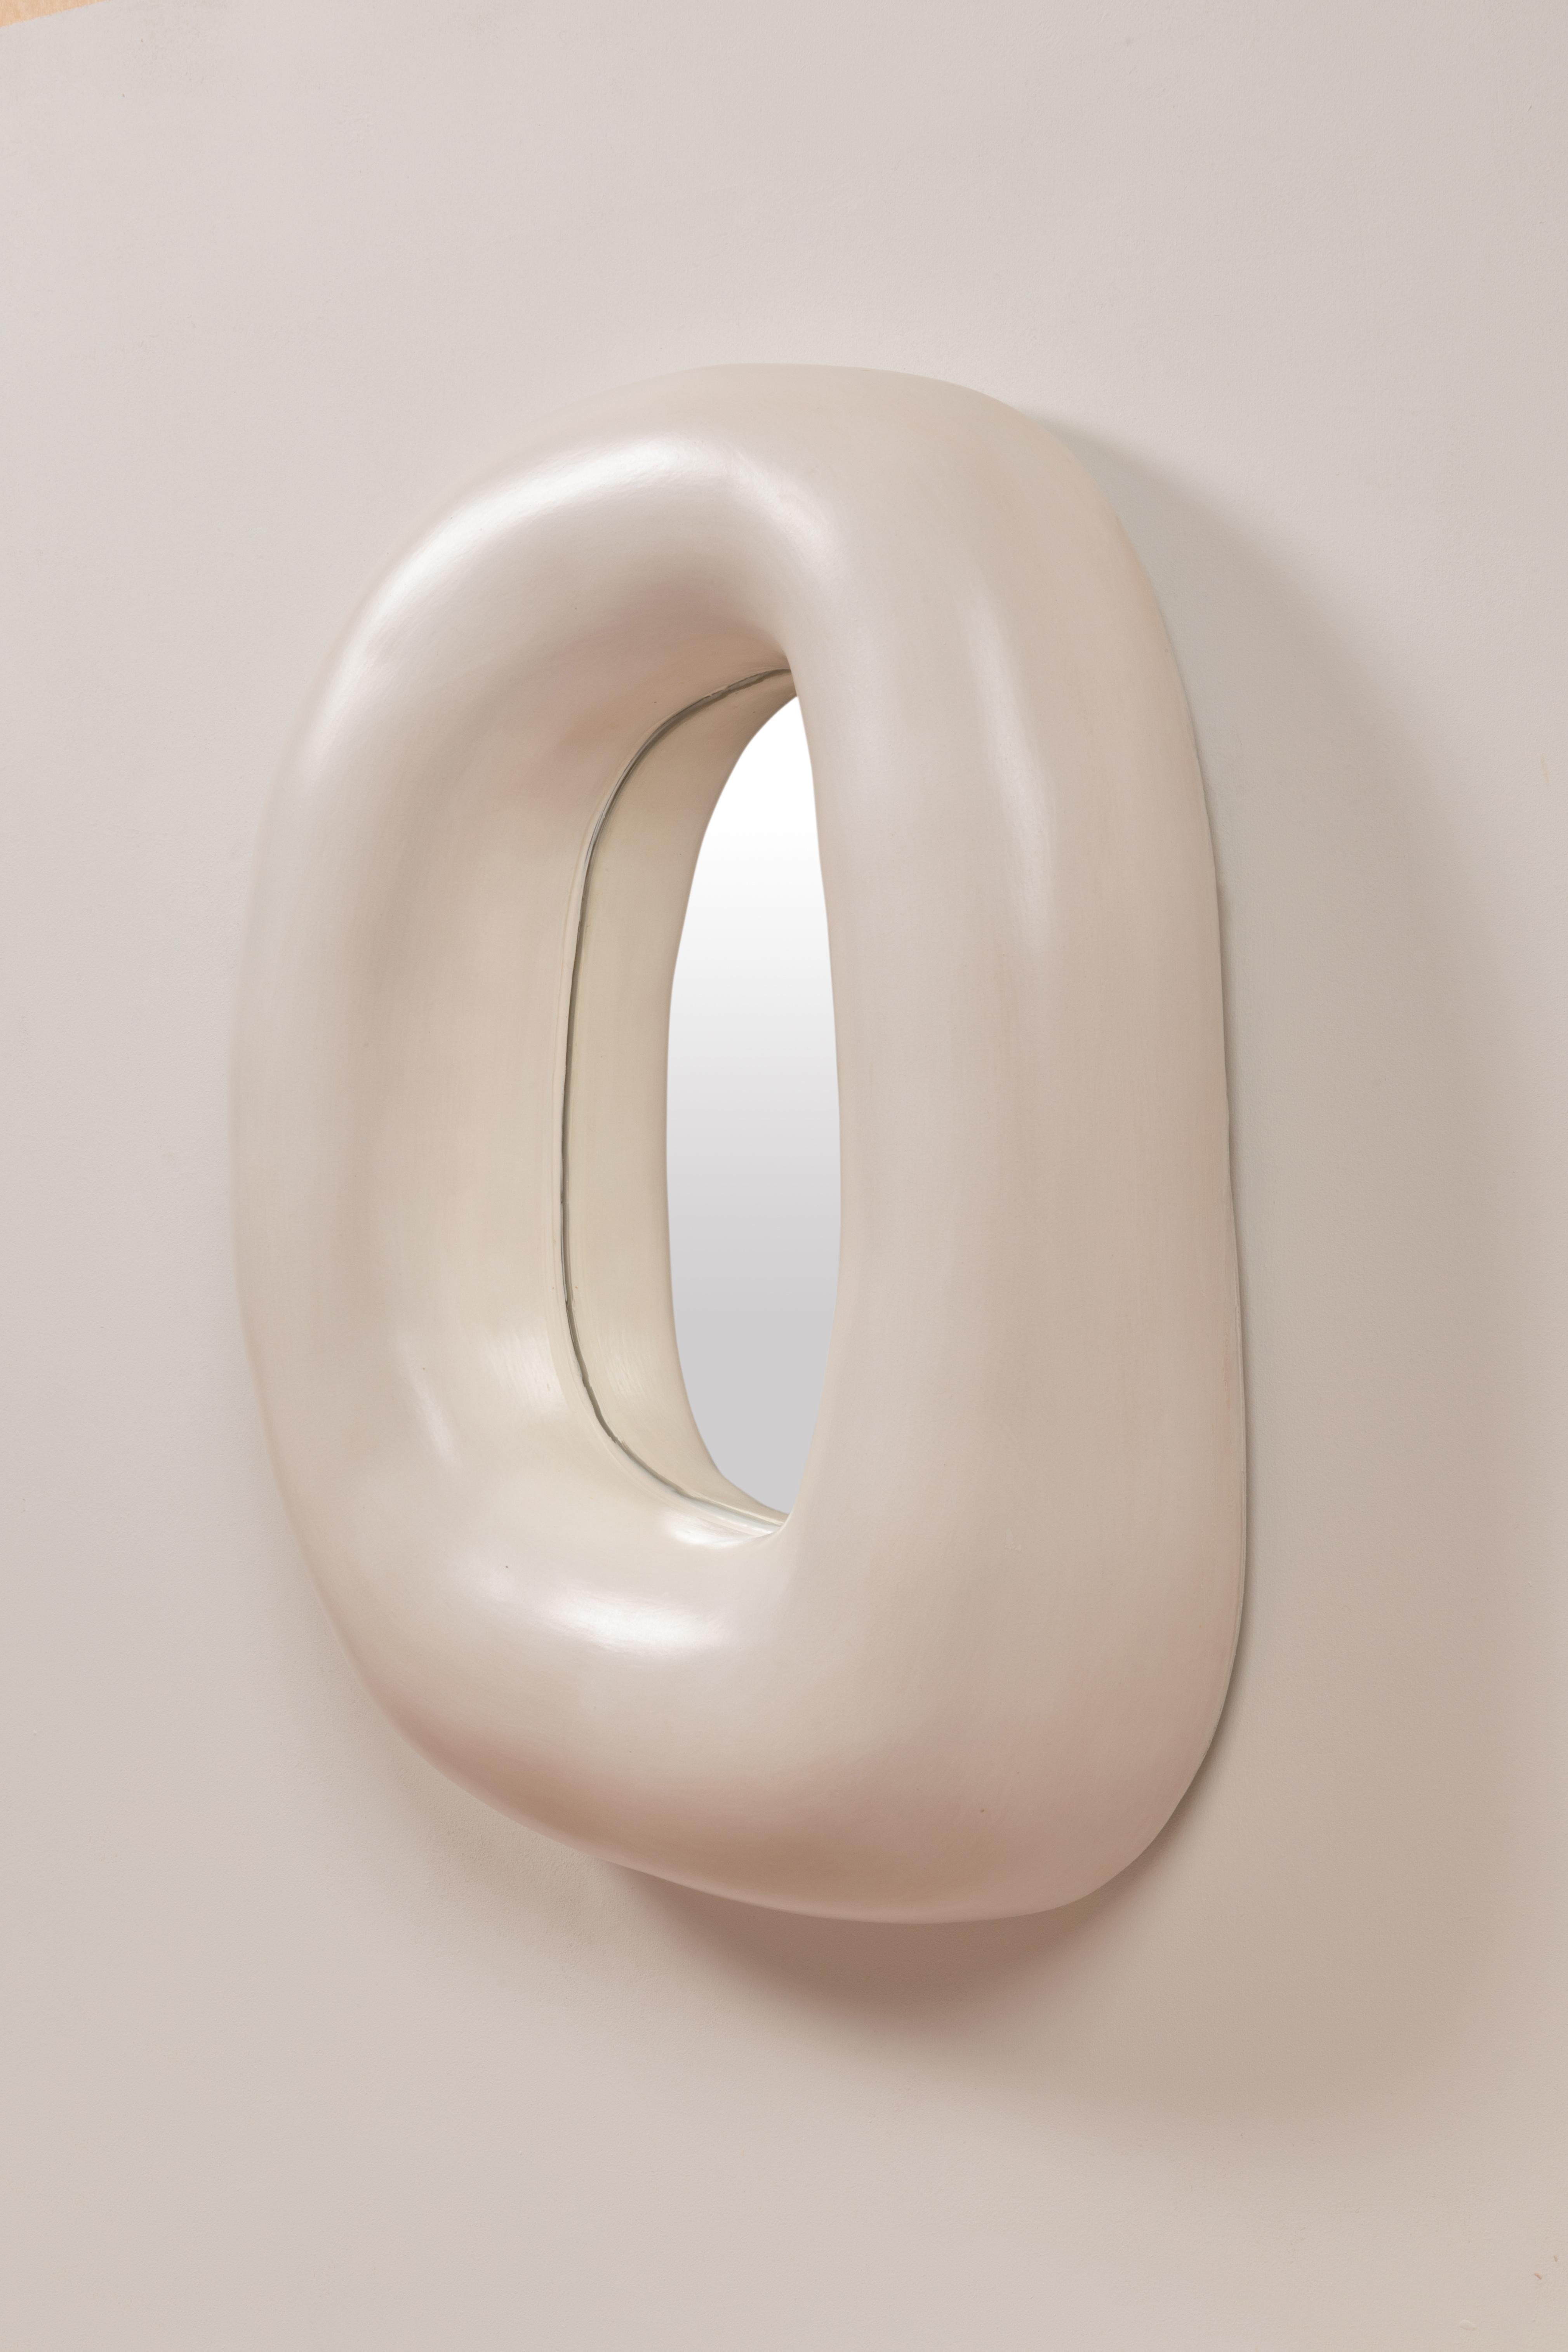 Post-Modern White Mirror by Elsa Foulon